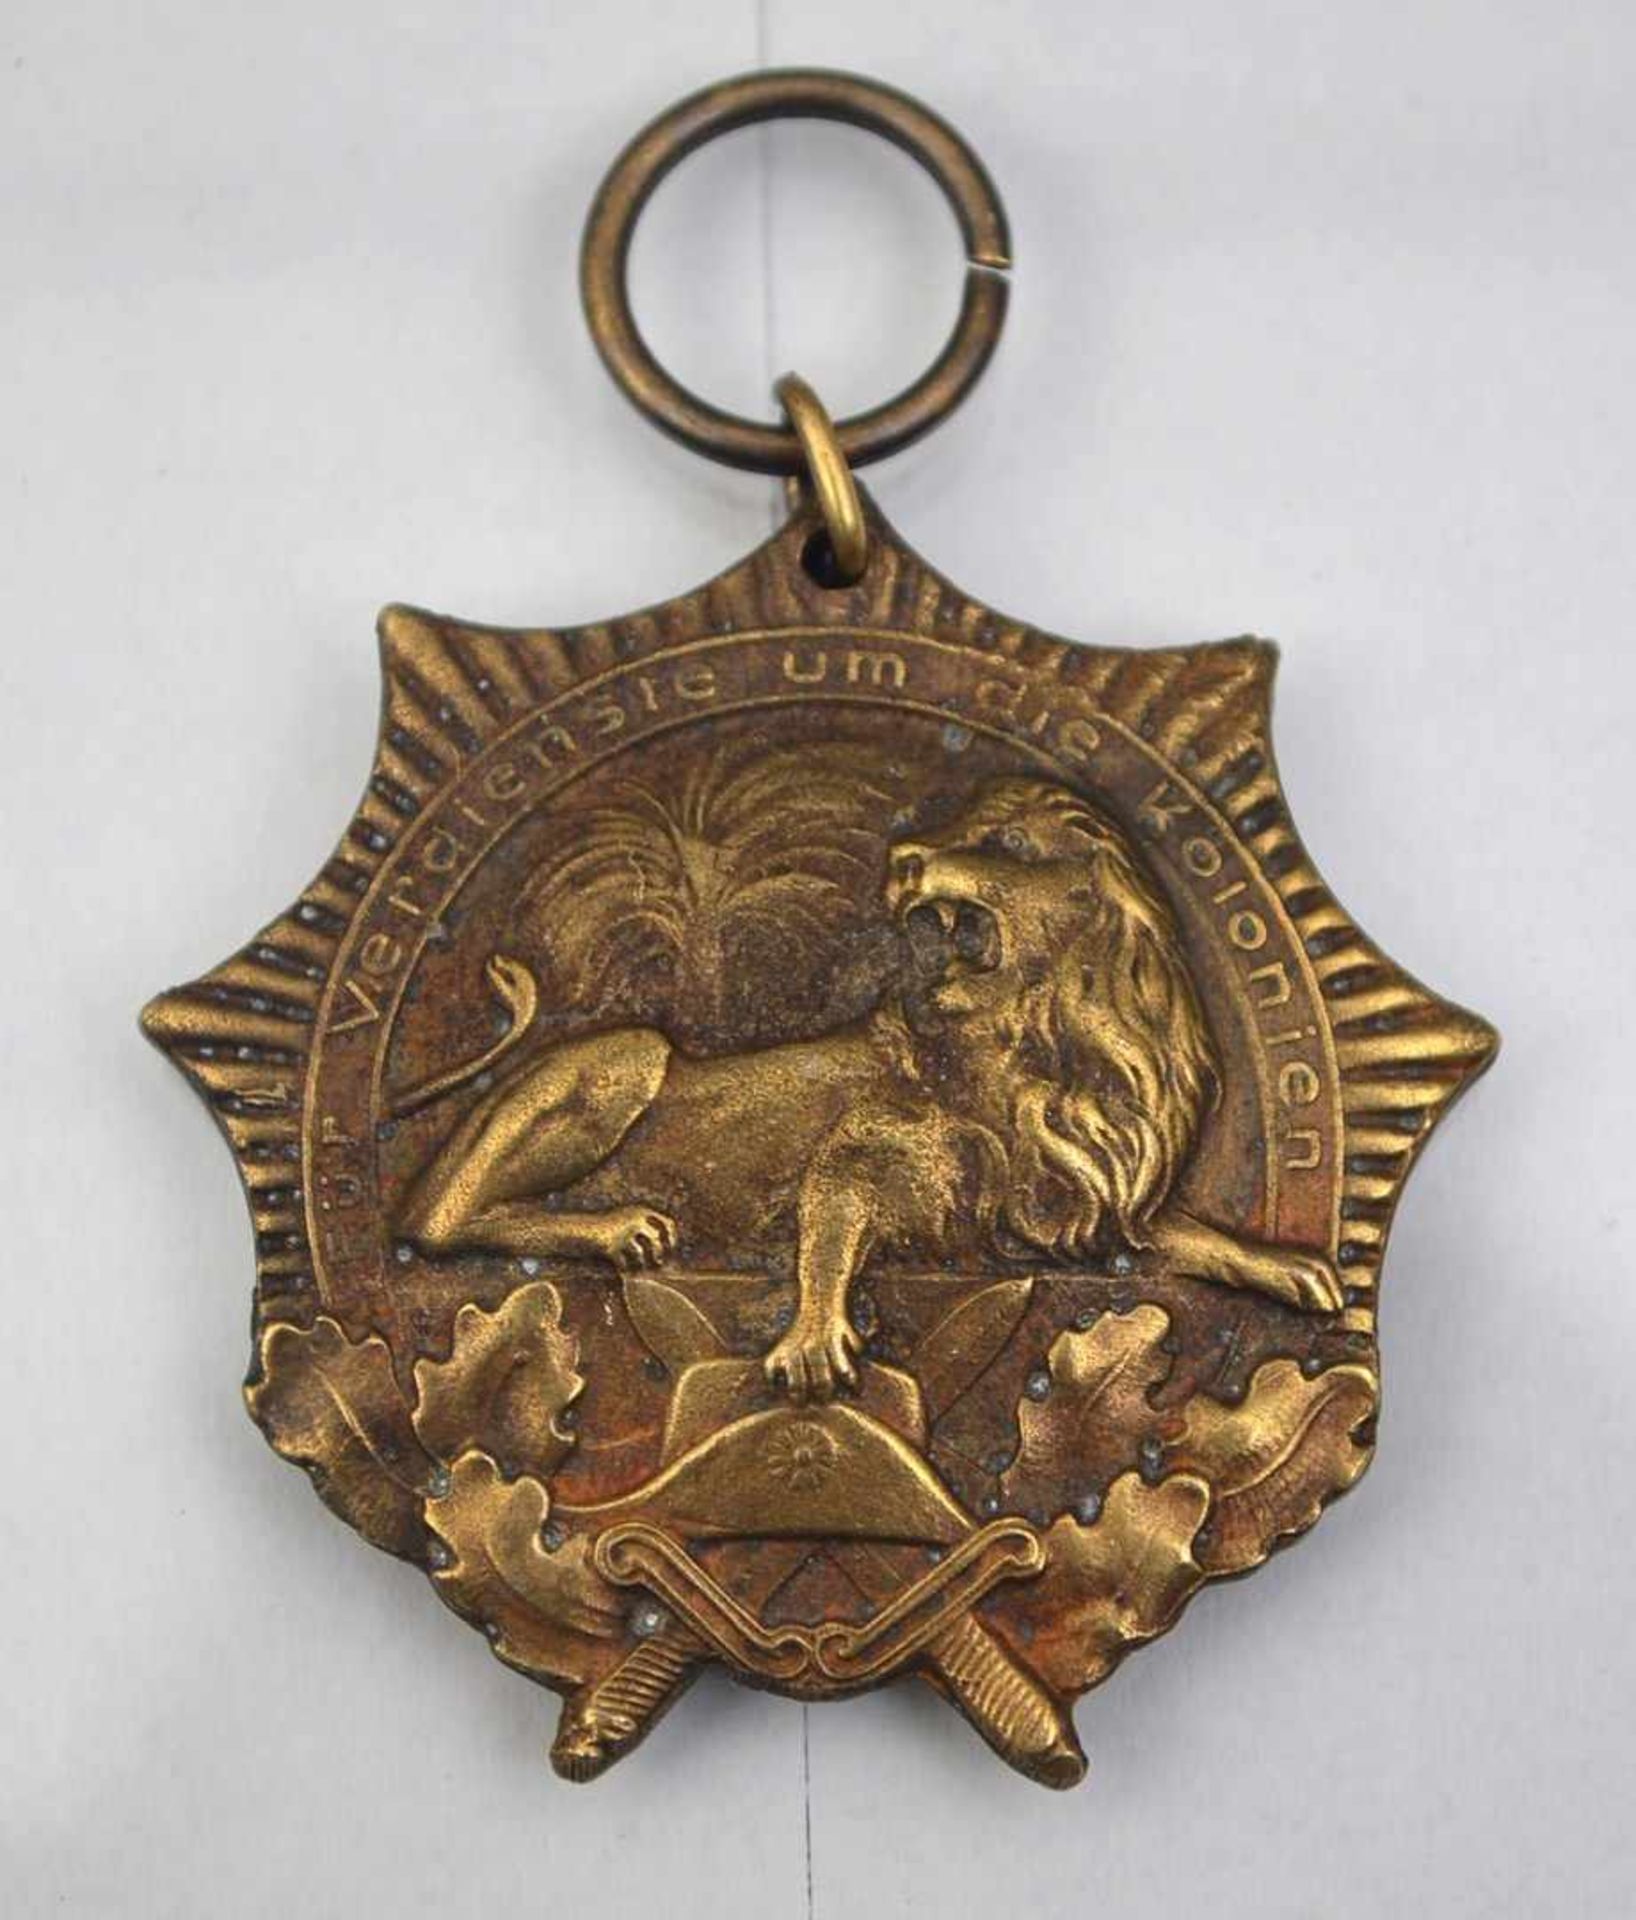 Kolonial-Löwenorden Messing, II. Klasse, um 1920